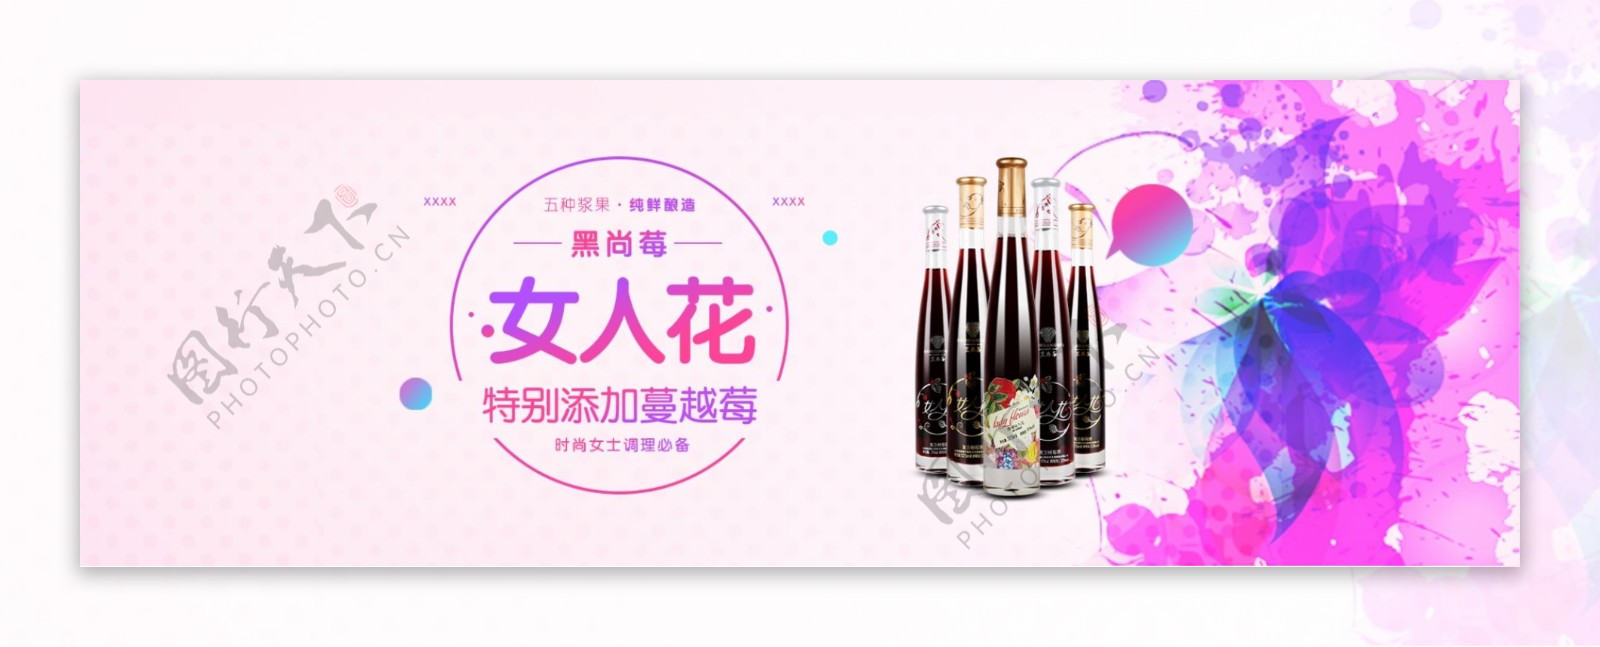 天猫电商淘宝酒全球酒水节促销活动海报banner模板素材下载